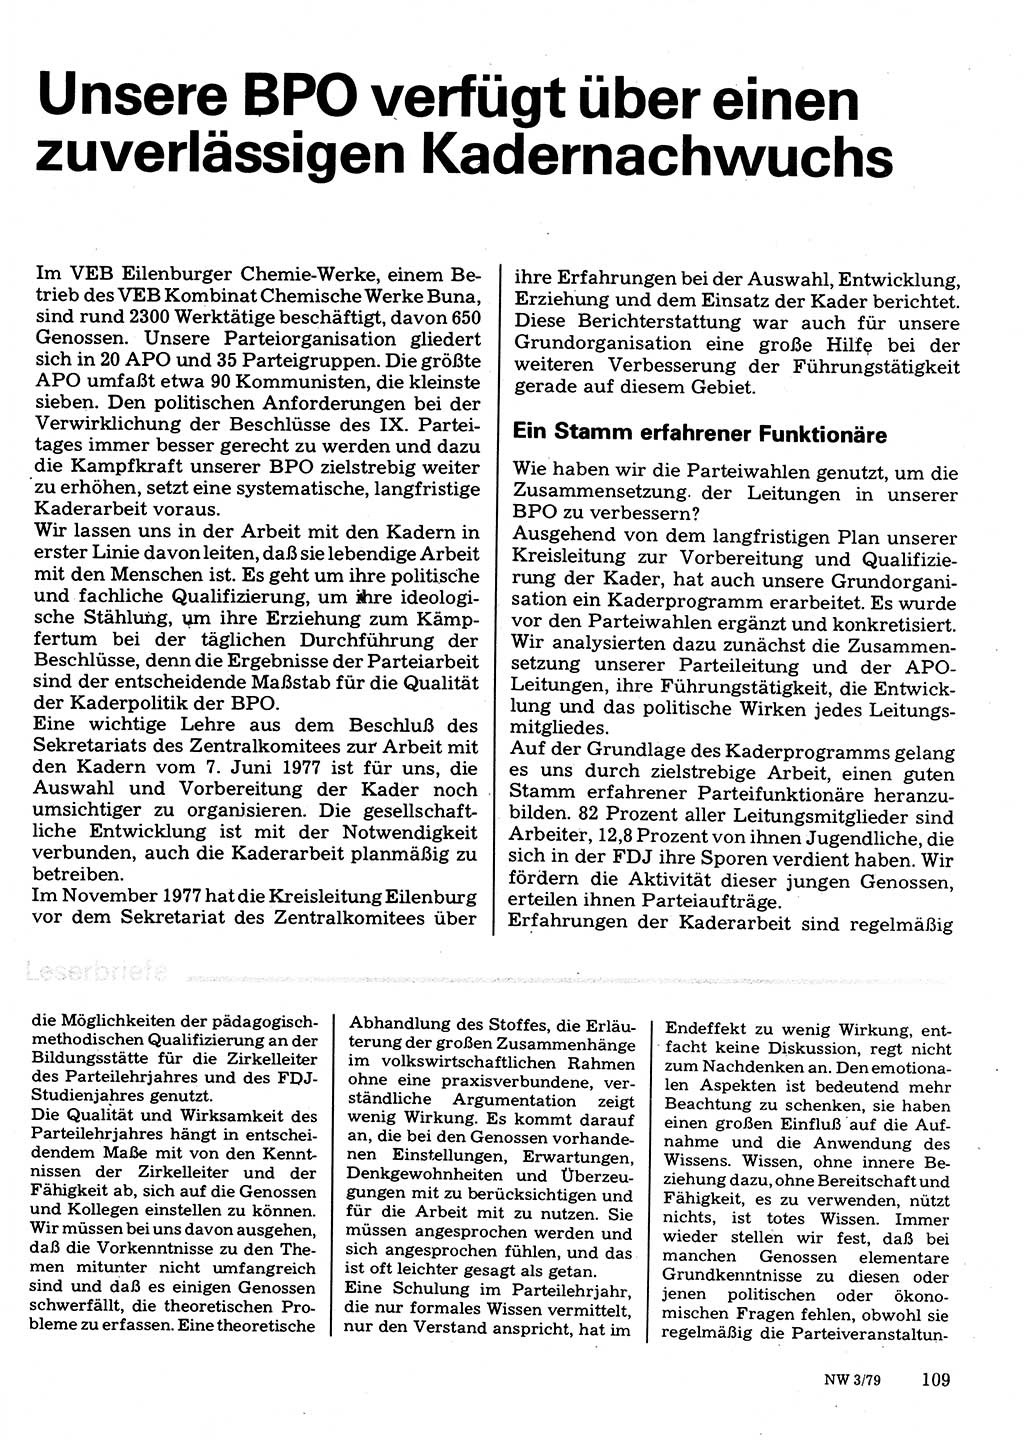 Neuer Weg (NW), Organ des Zentralkomitees (ZK) der SED (Sozialistische Einheitspartei Deutschlands) für Fragen des Parteilebens, 34. Jahrgang [Deutsche Demokratische Republik (DDR)] 1979, Seite 109 (NW ZK SED DDR 1979, S. 109)